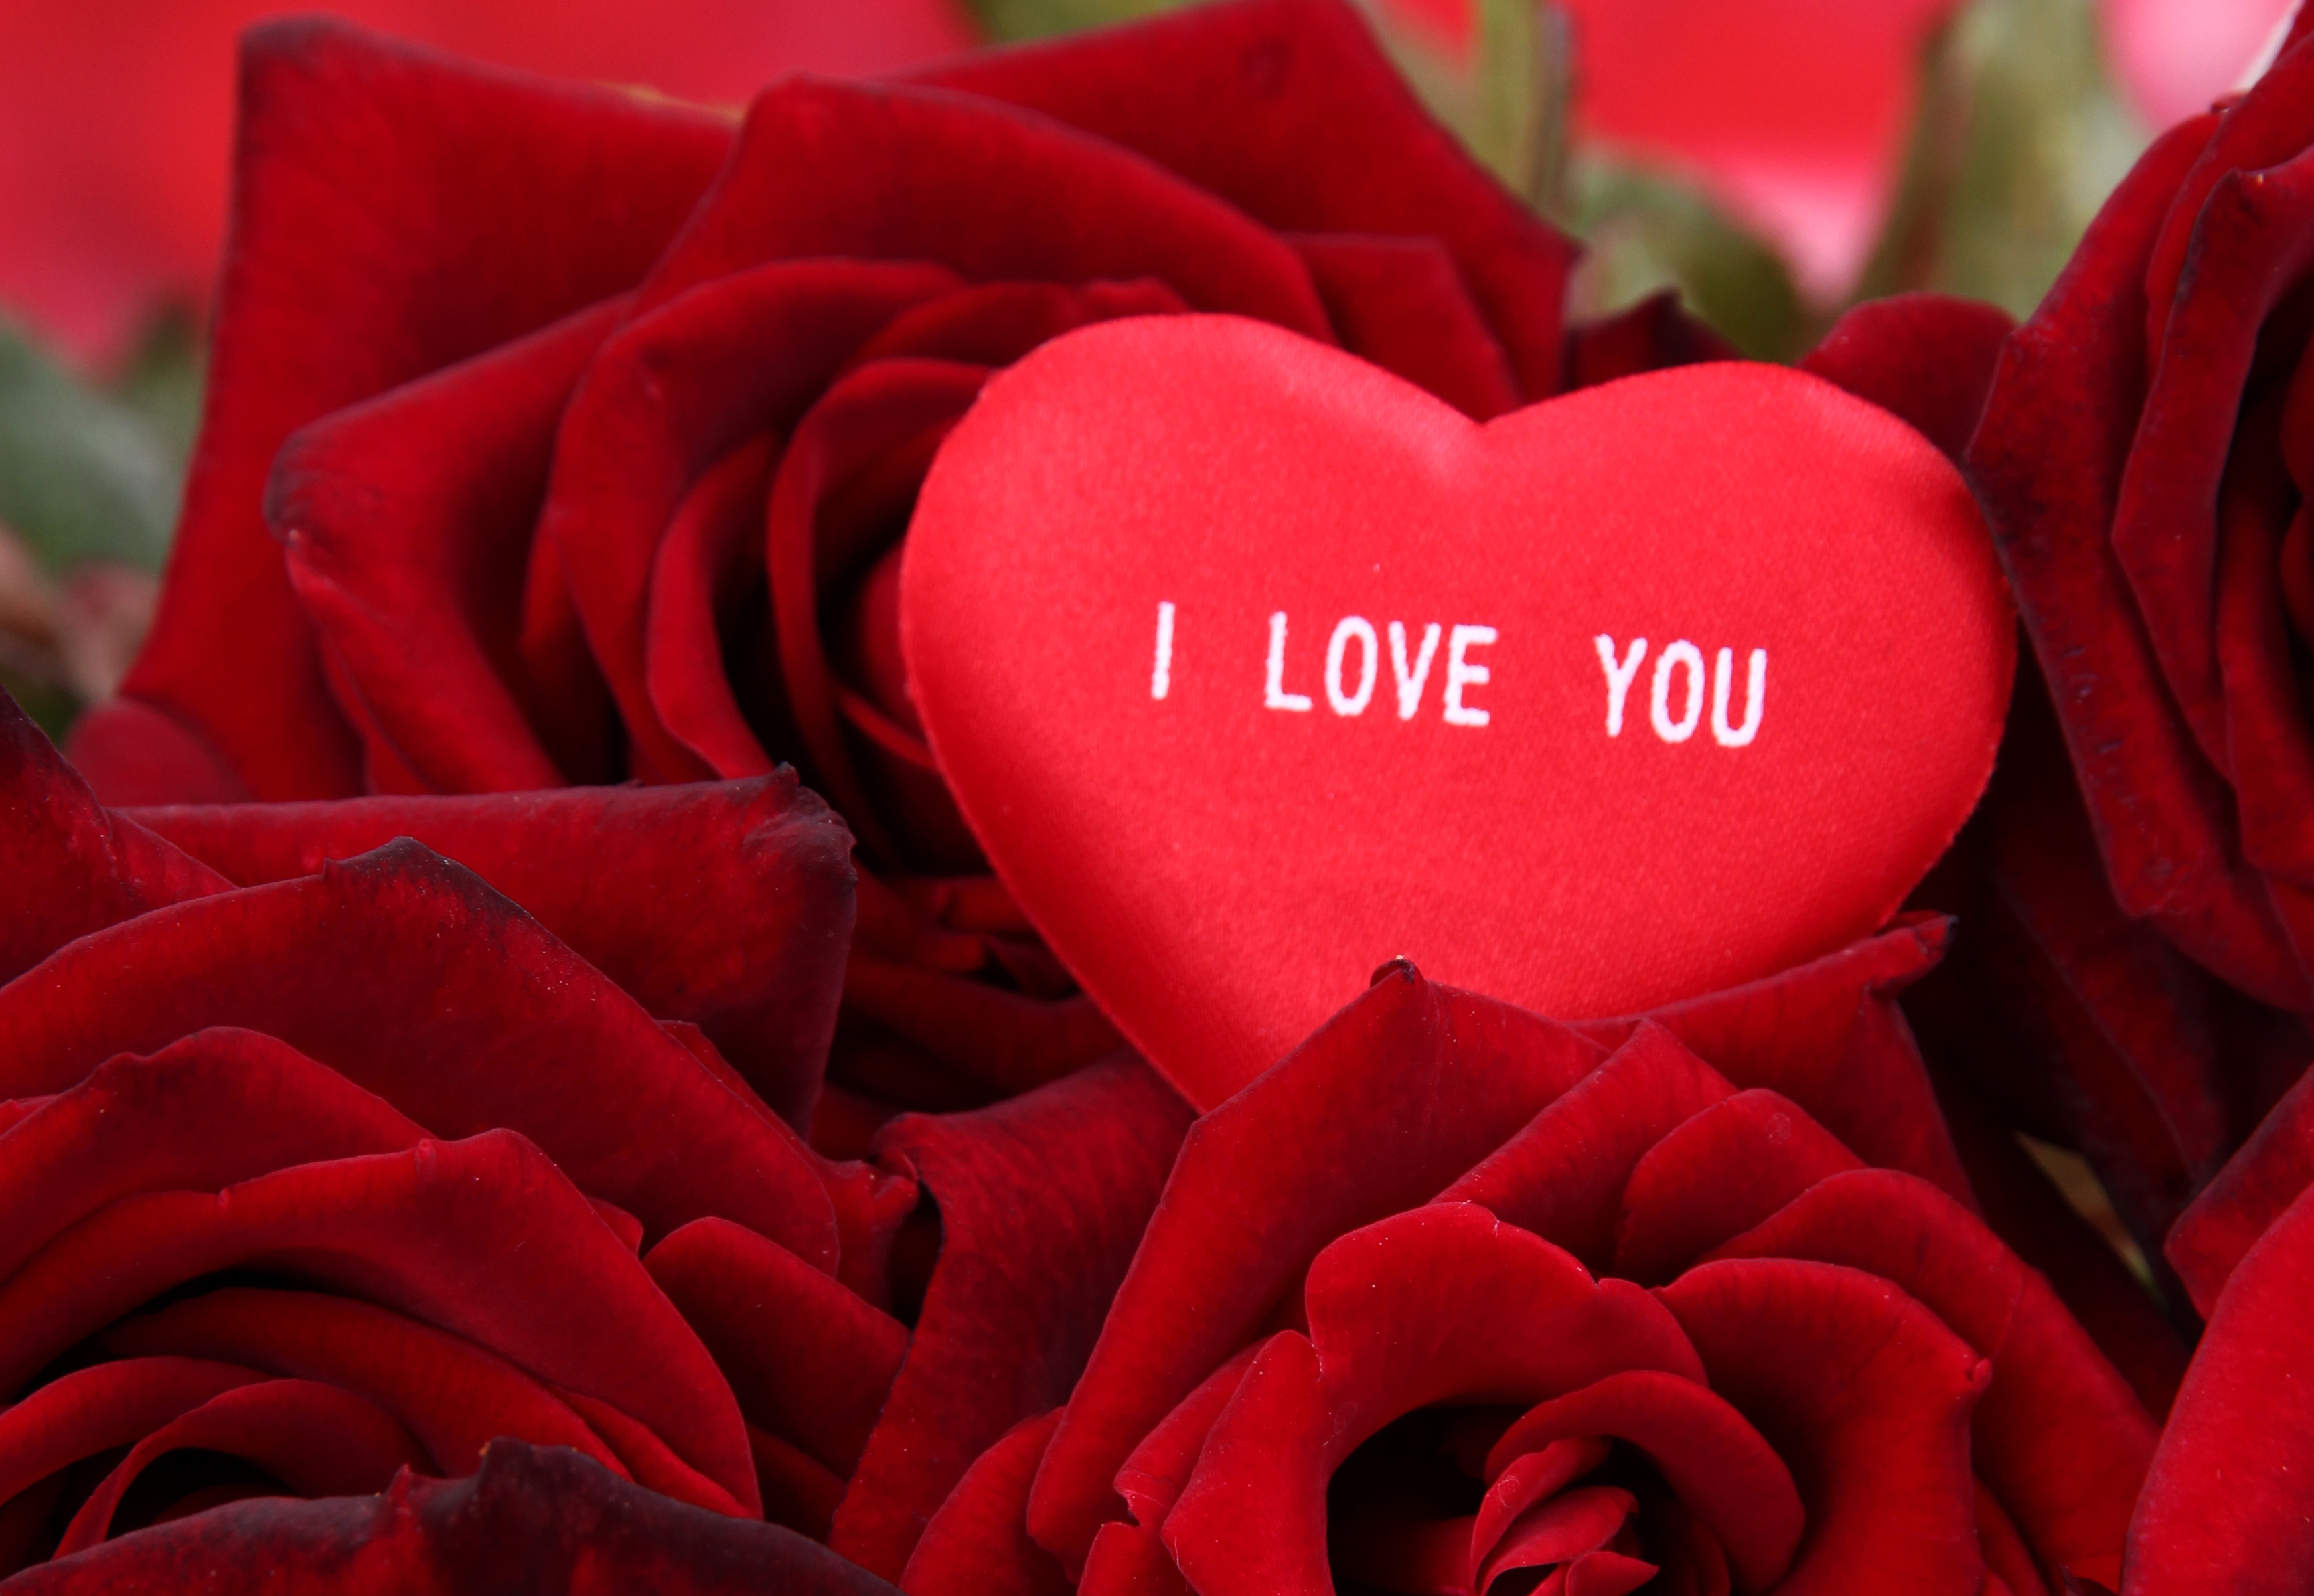 Скачать обои бесплатно Цветок, Сердце, Красная Роза, День Святого Валентина, Праздничные картинка на рабочий стол ПК